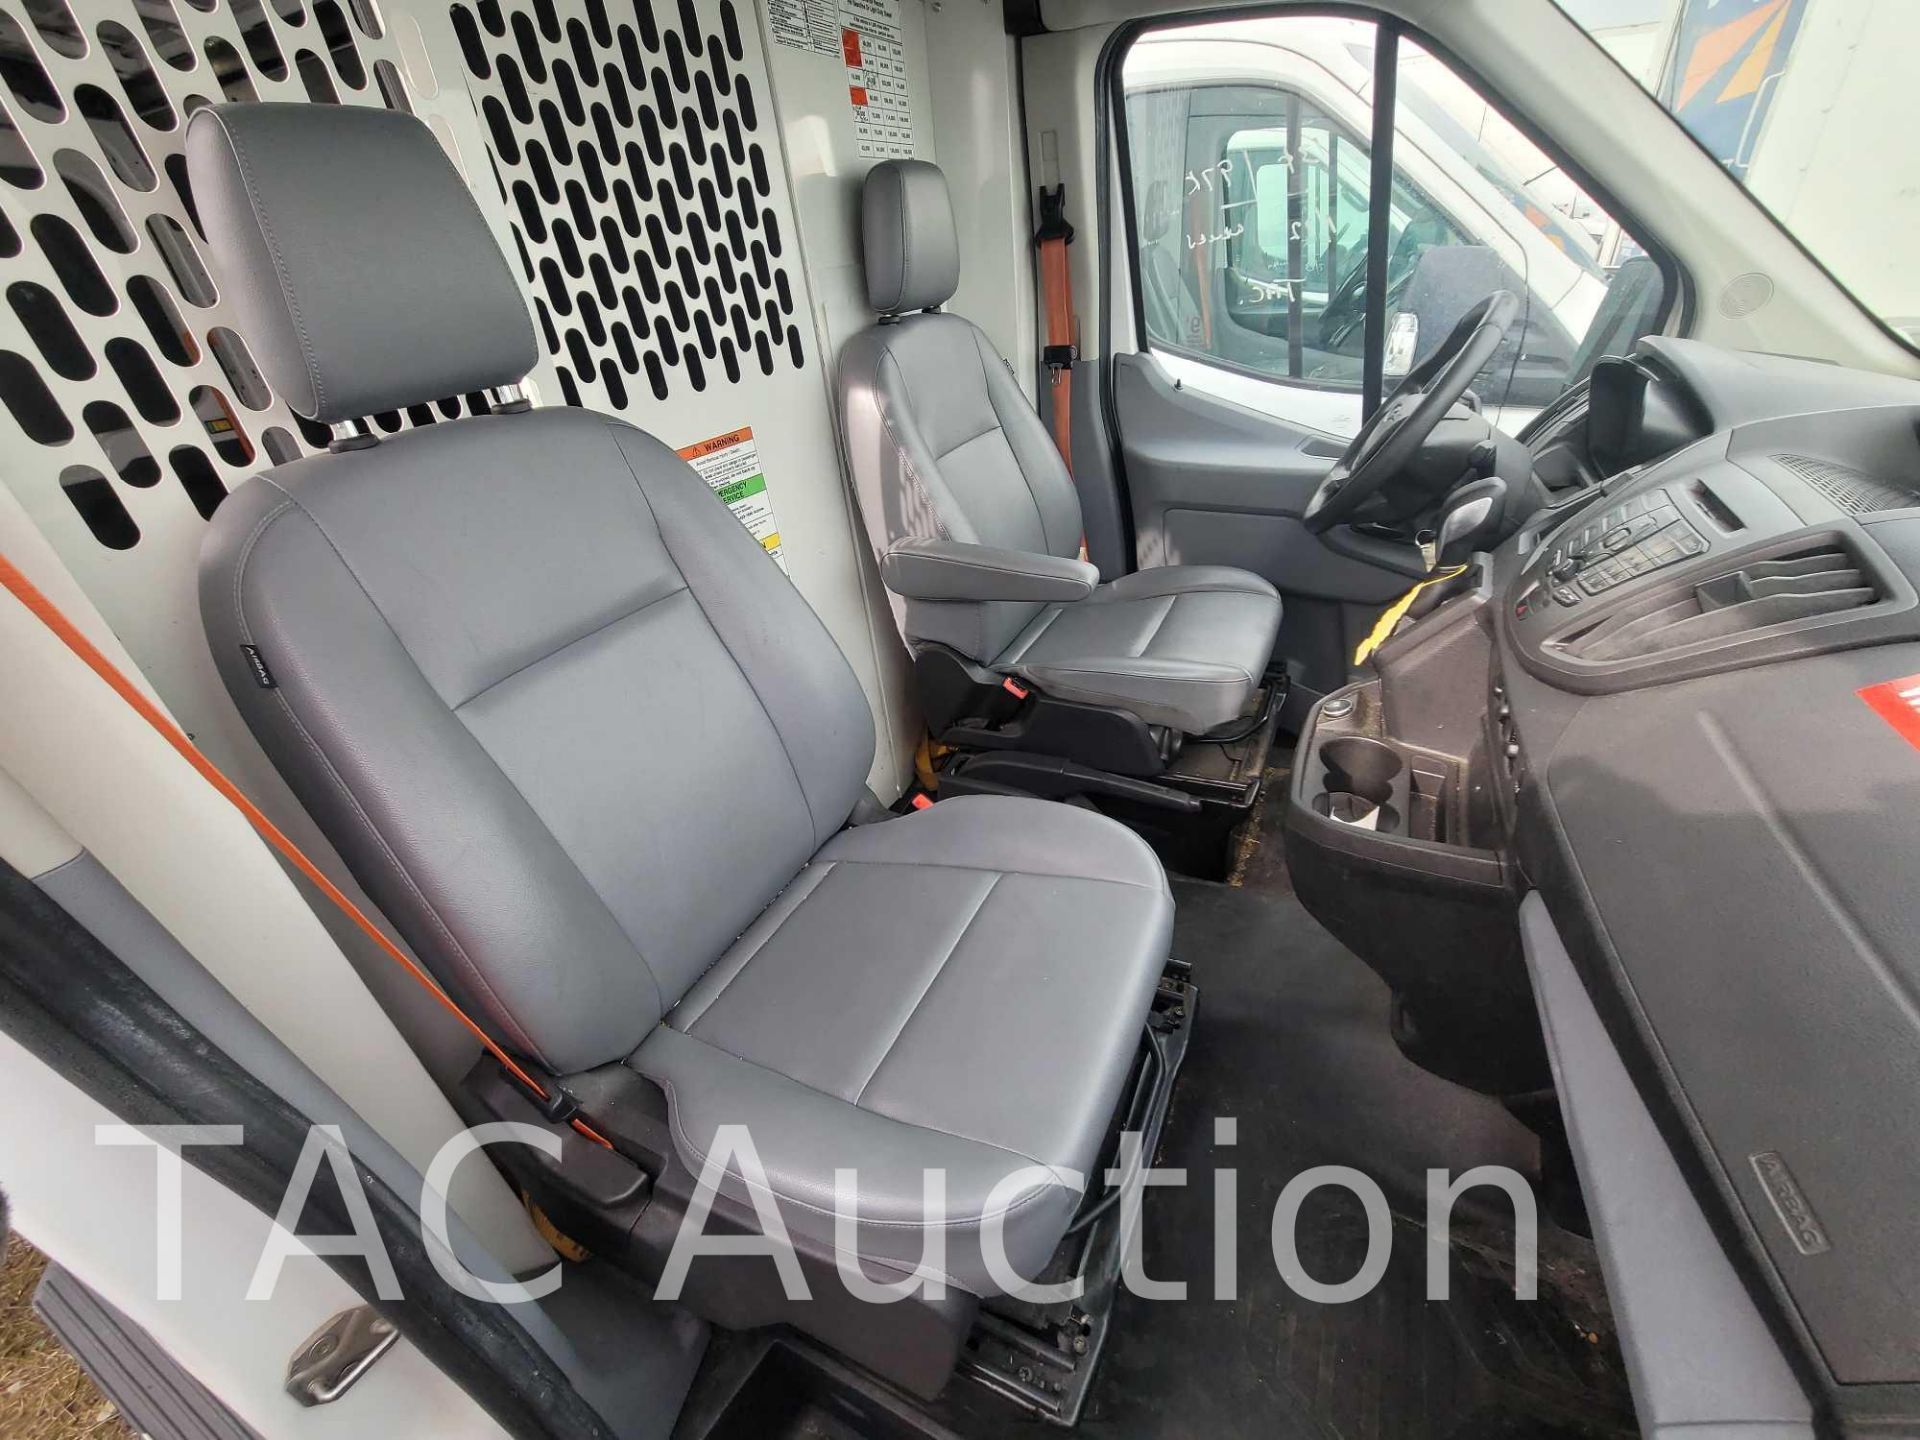 2018 Ford Transit 150 Cargo Van - Image 18 of 47